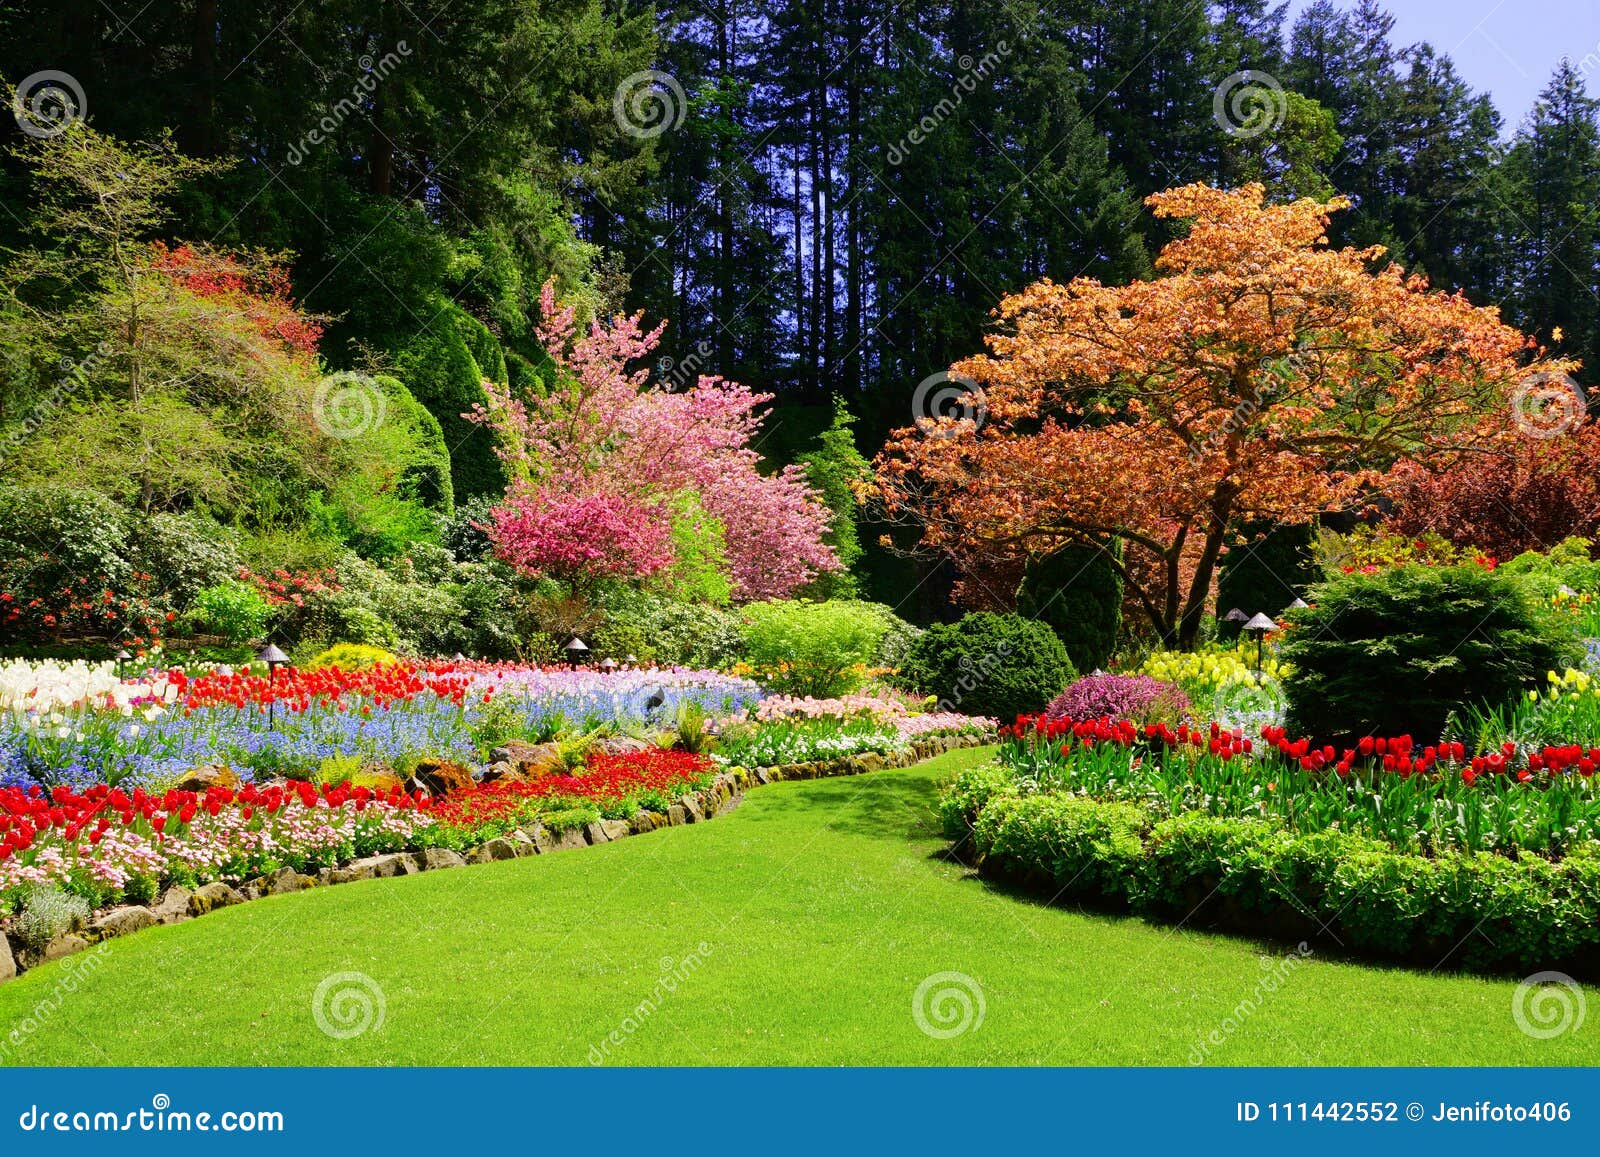 butchart gardens, victoria, canada, vibrant spring colors